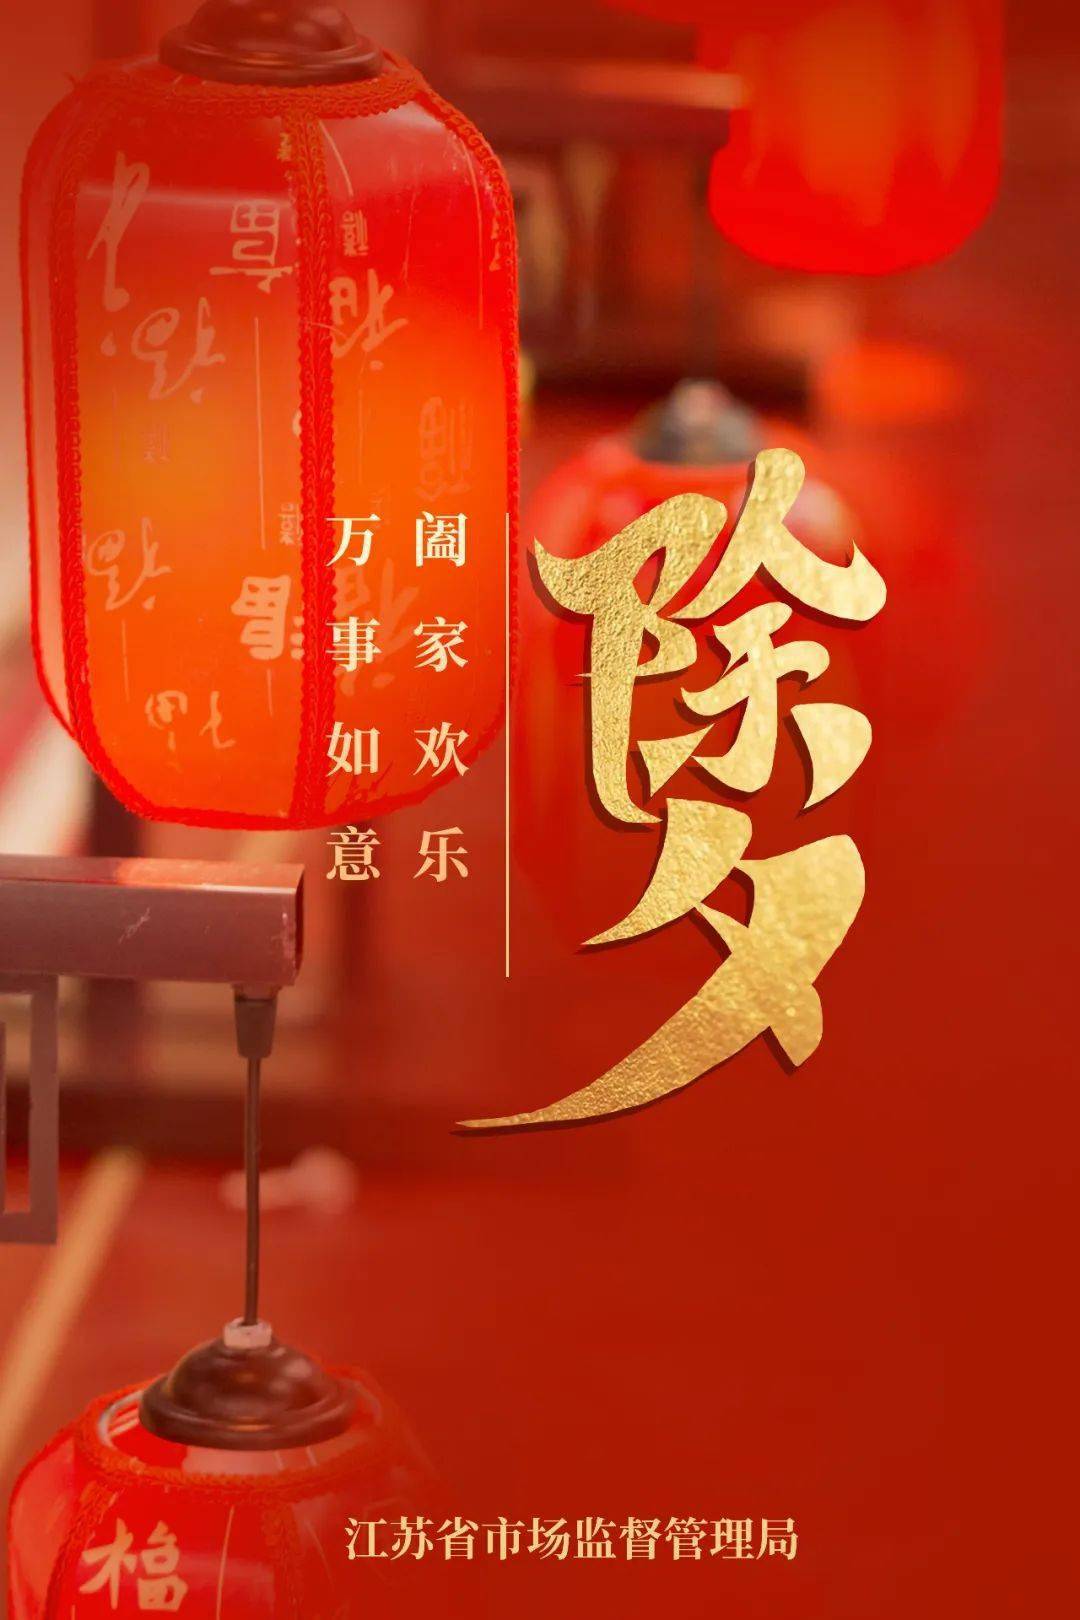 大年三十,江苏省市场监管局祝您除夕快乐!